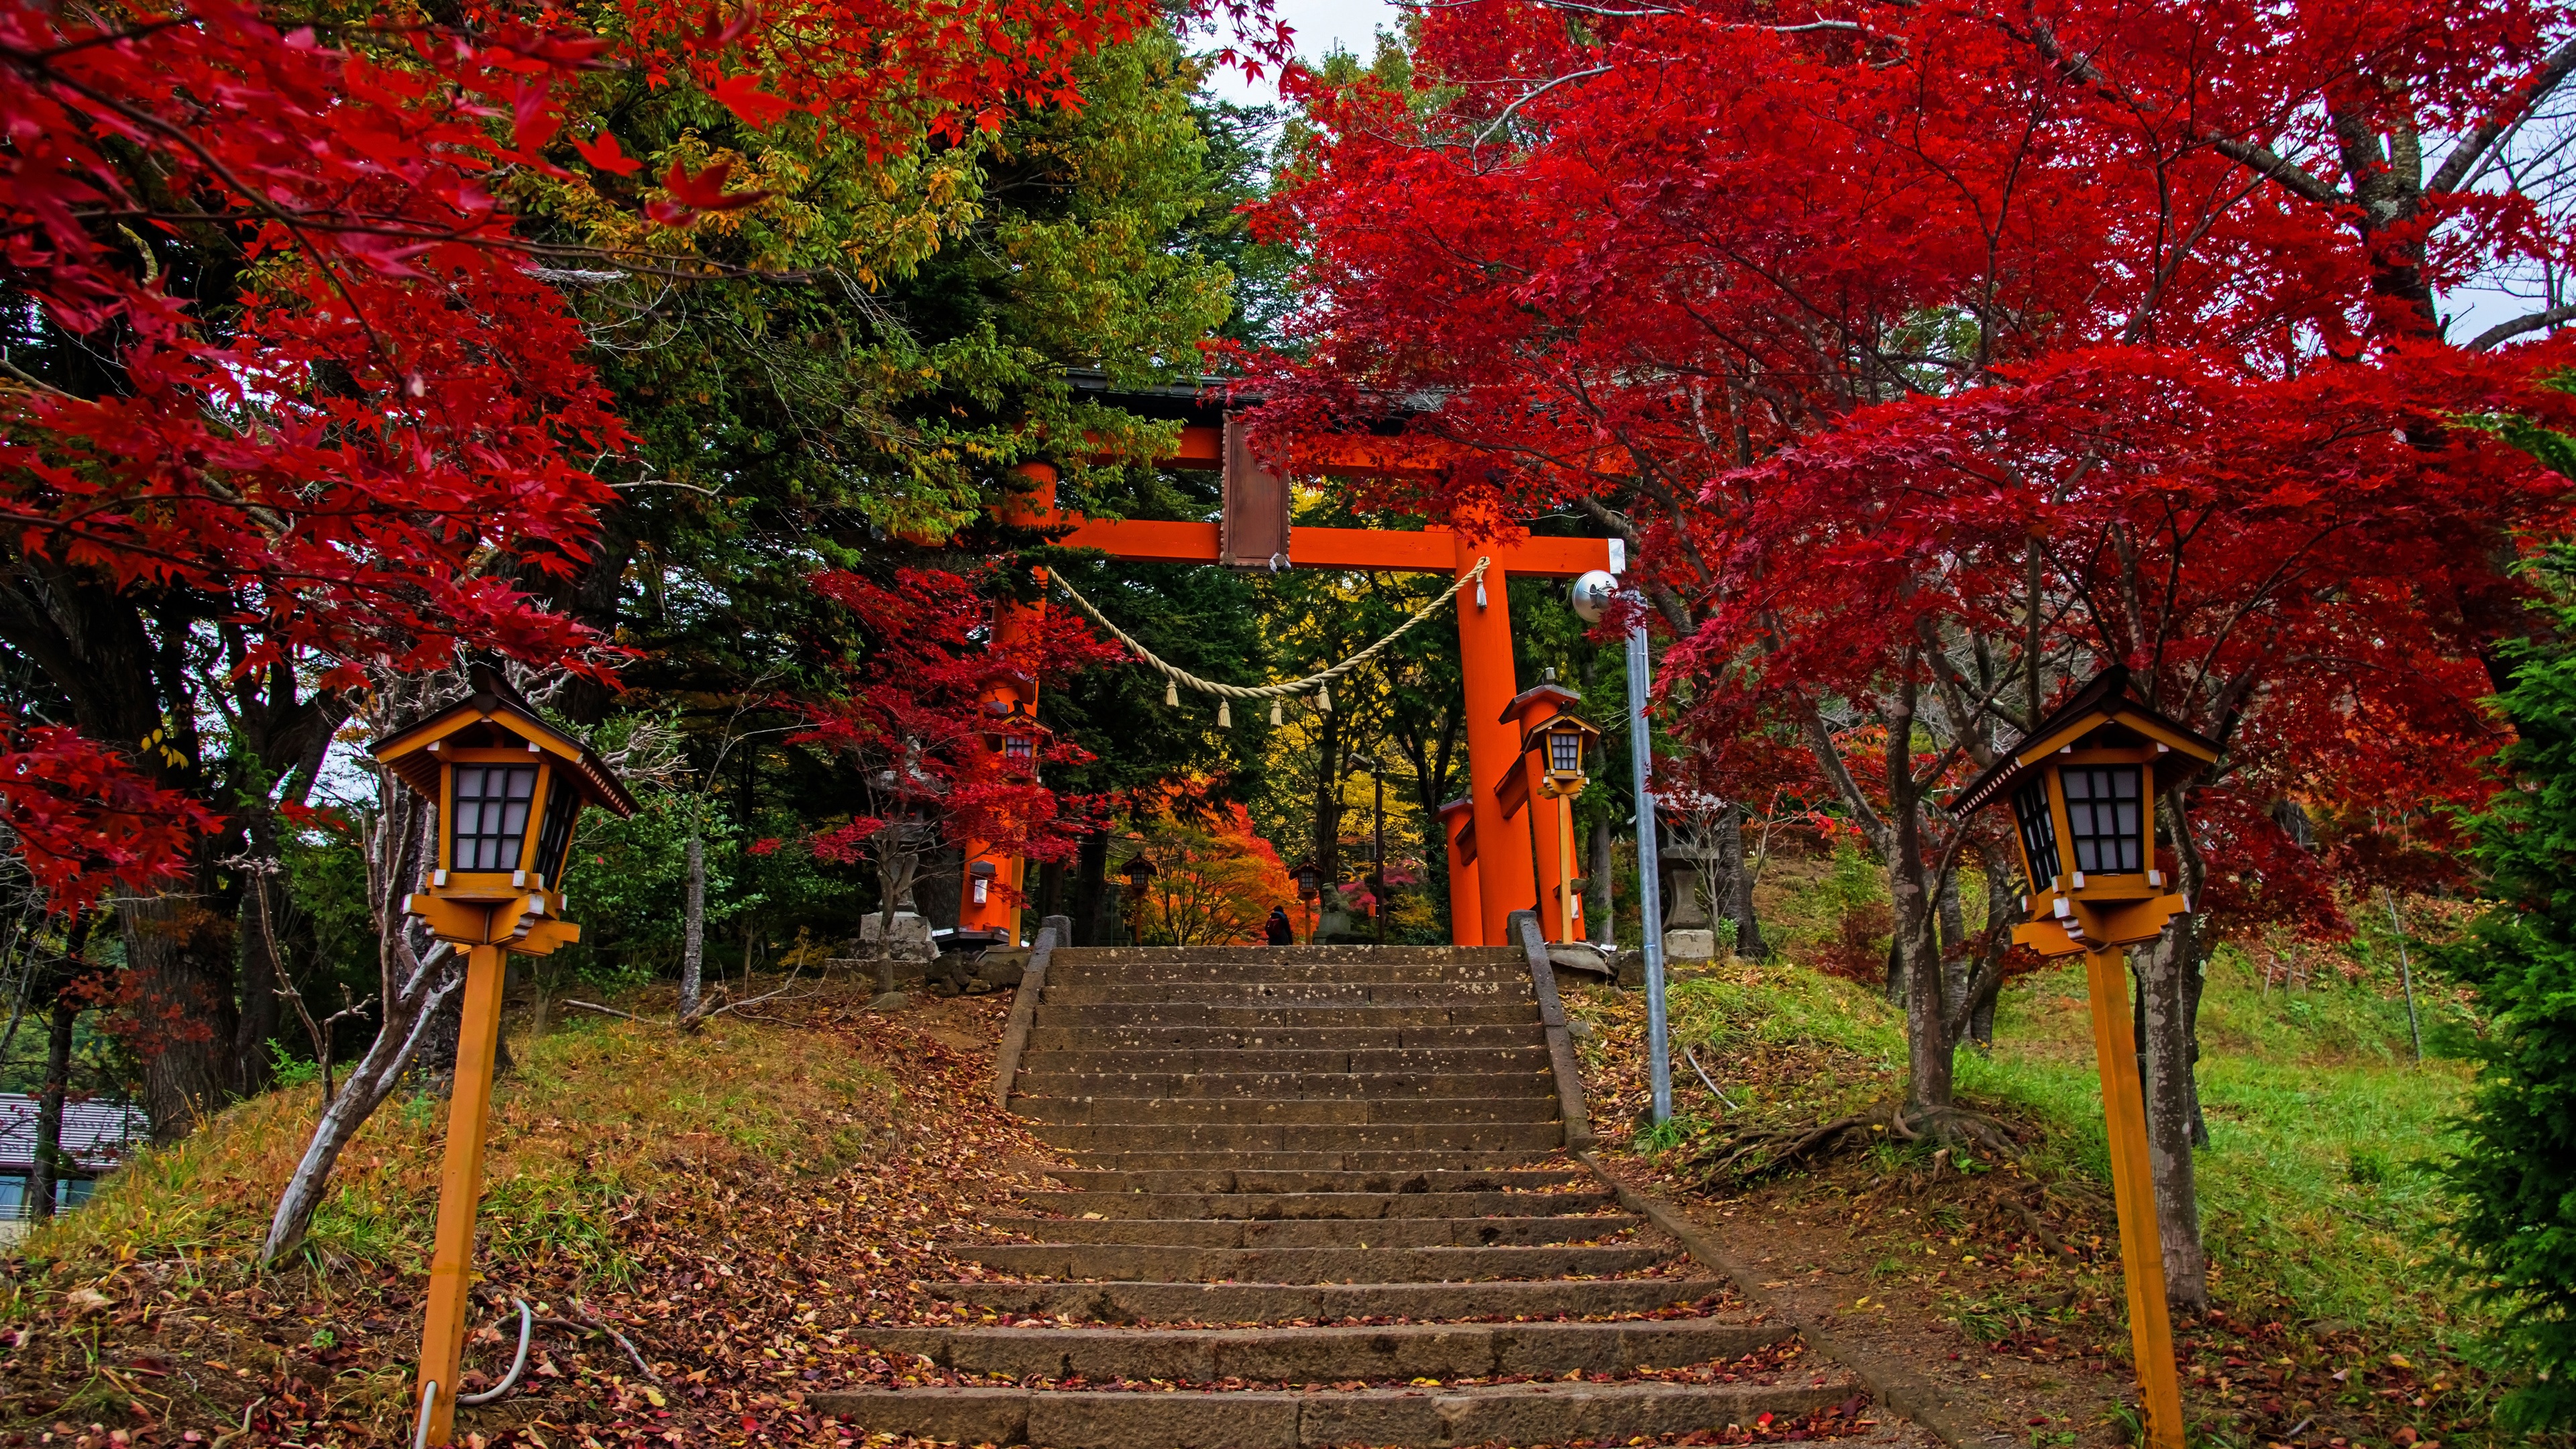 Wallpaper Fujiyoshida, gate, ladder, trees, autumn, Japan 3840x2160 UHD 4K Picture, Image